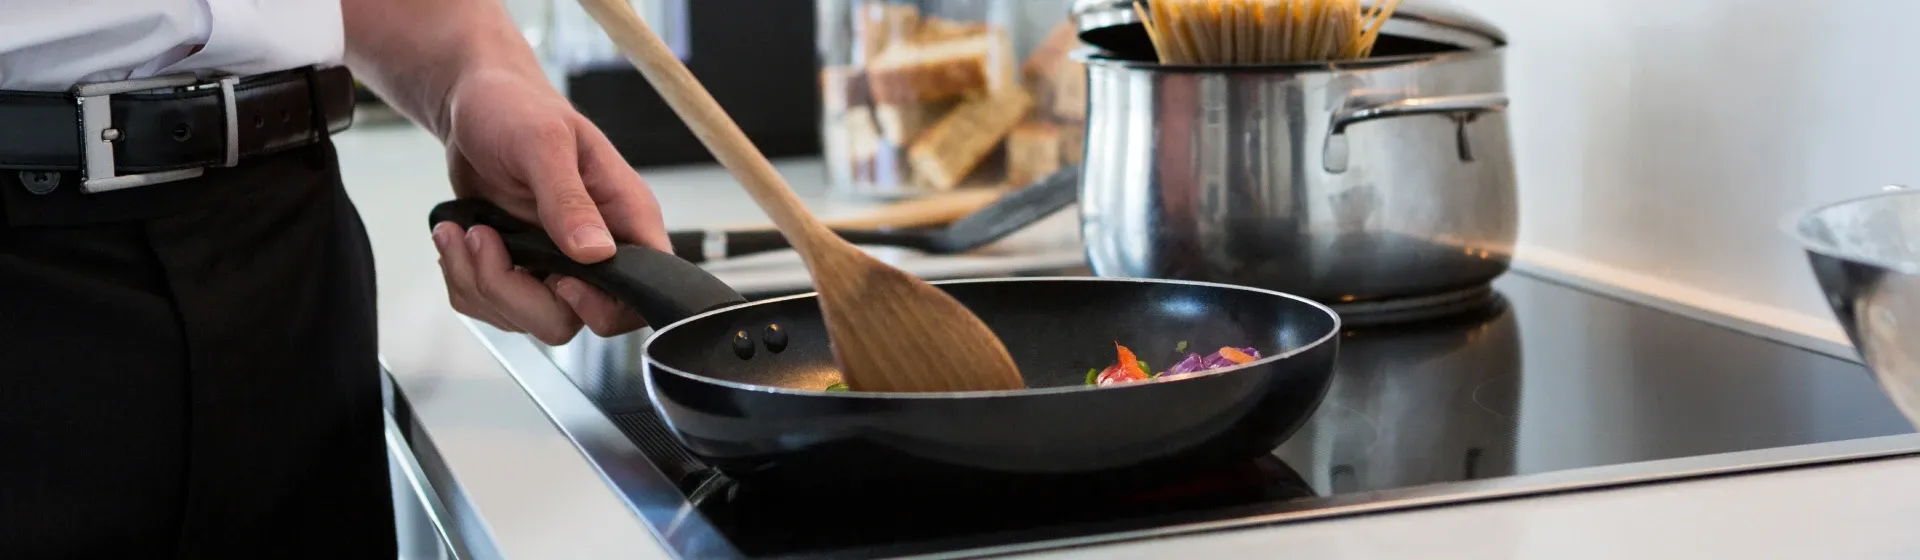 7 motivos para comprar um fogão de indução para sua cozinha